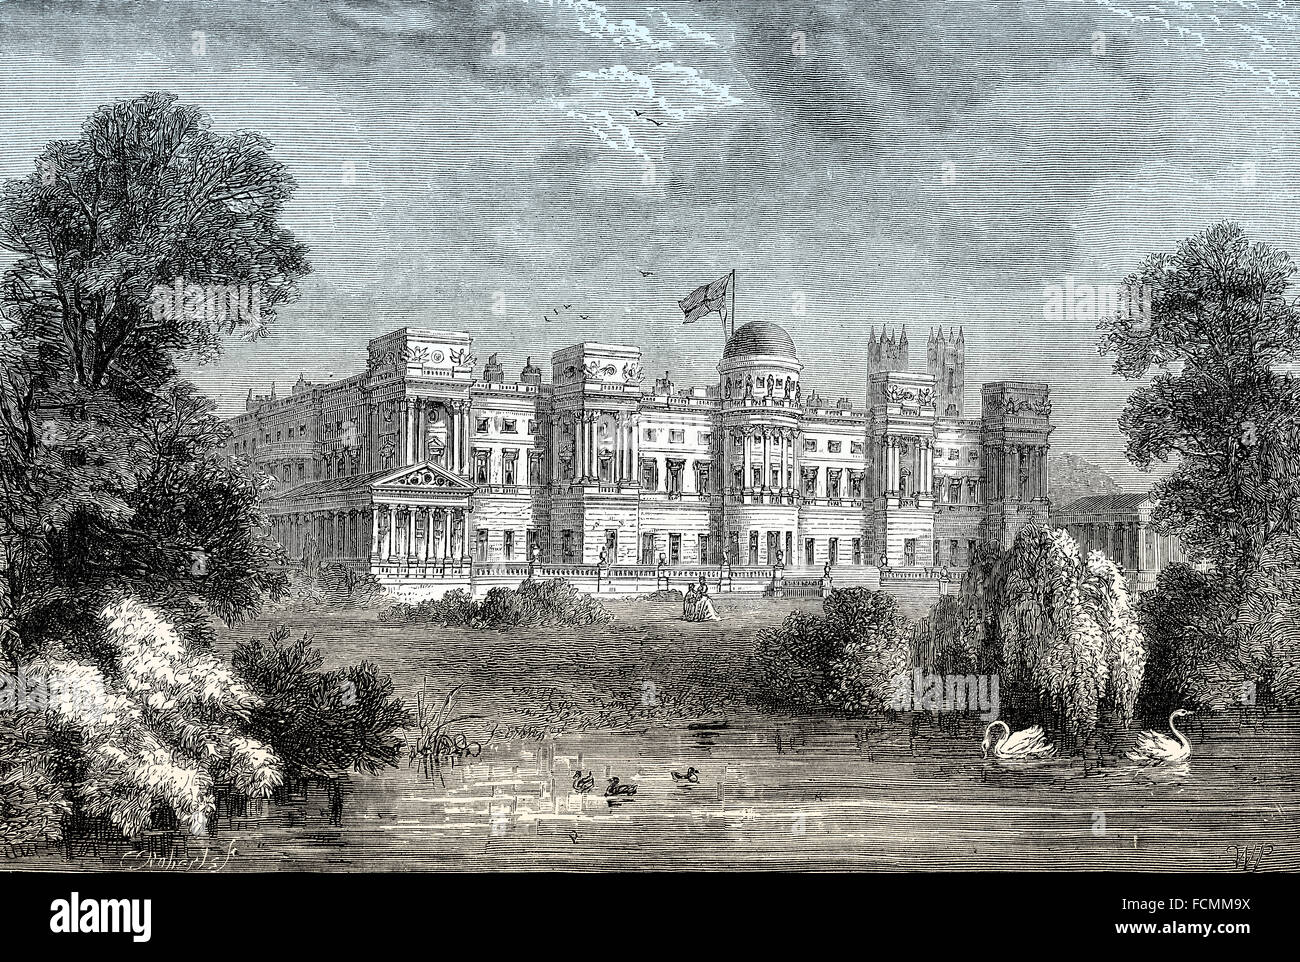 Le palais de Buckingham, jardin avant, City of Westminster, London, England Banque D'Images